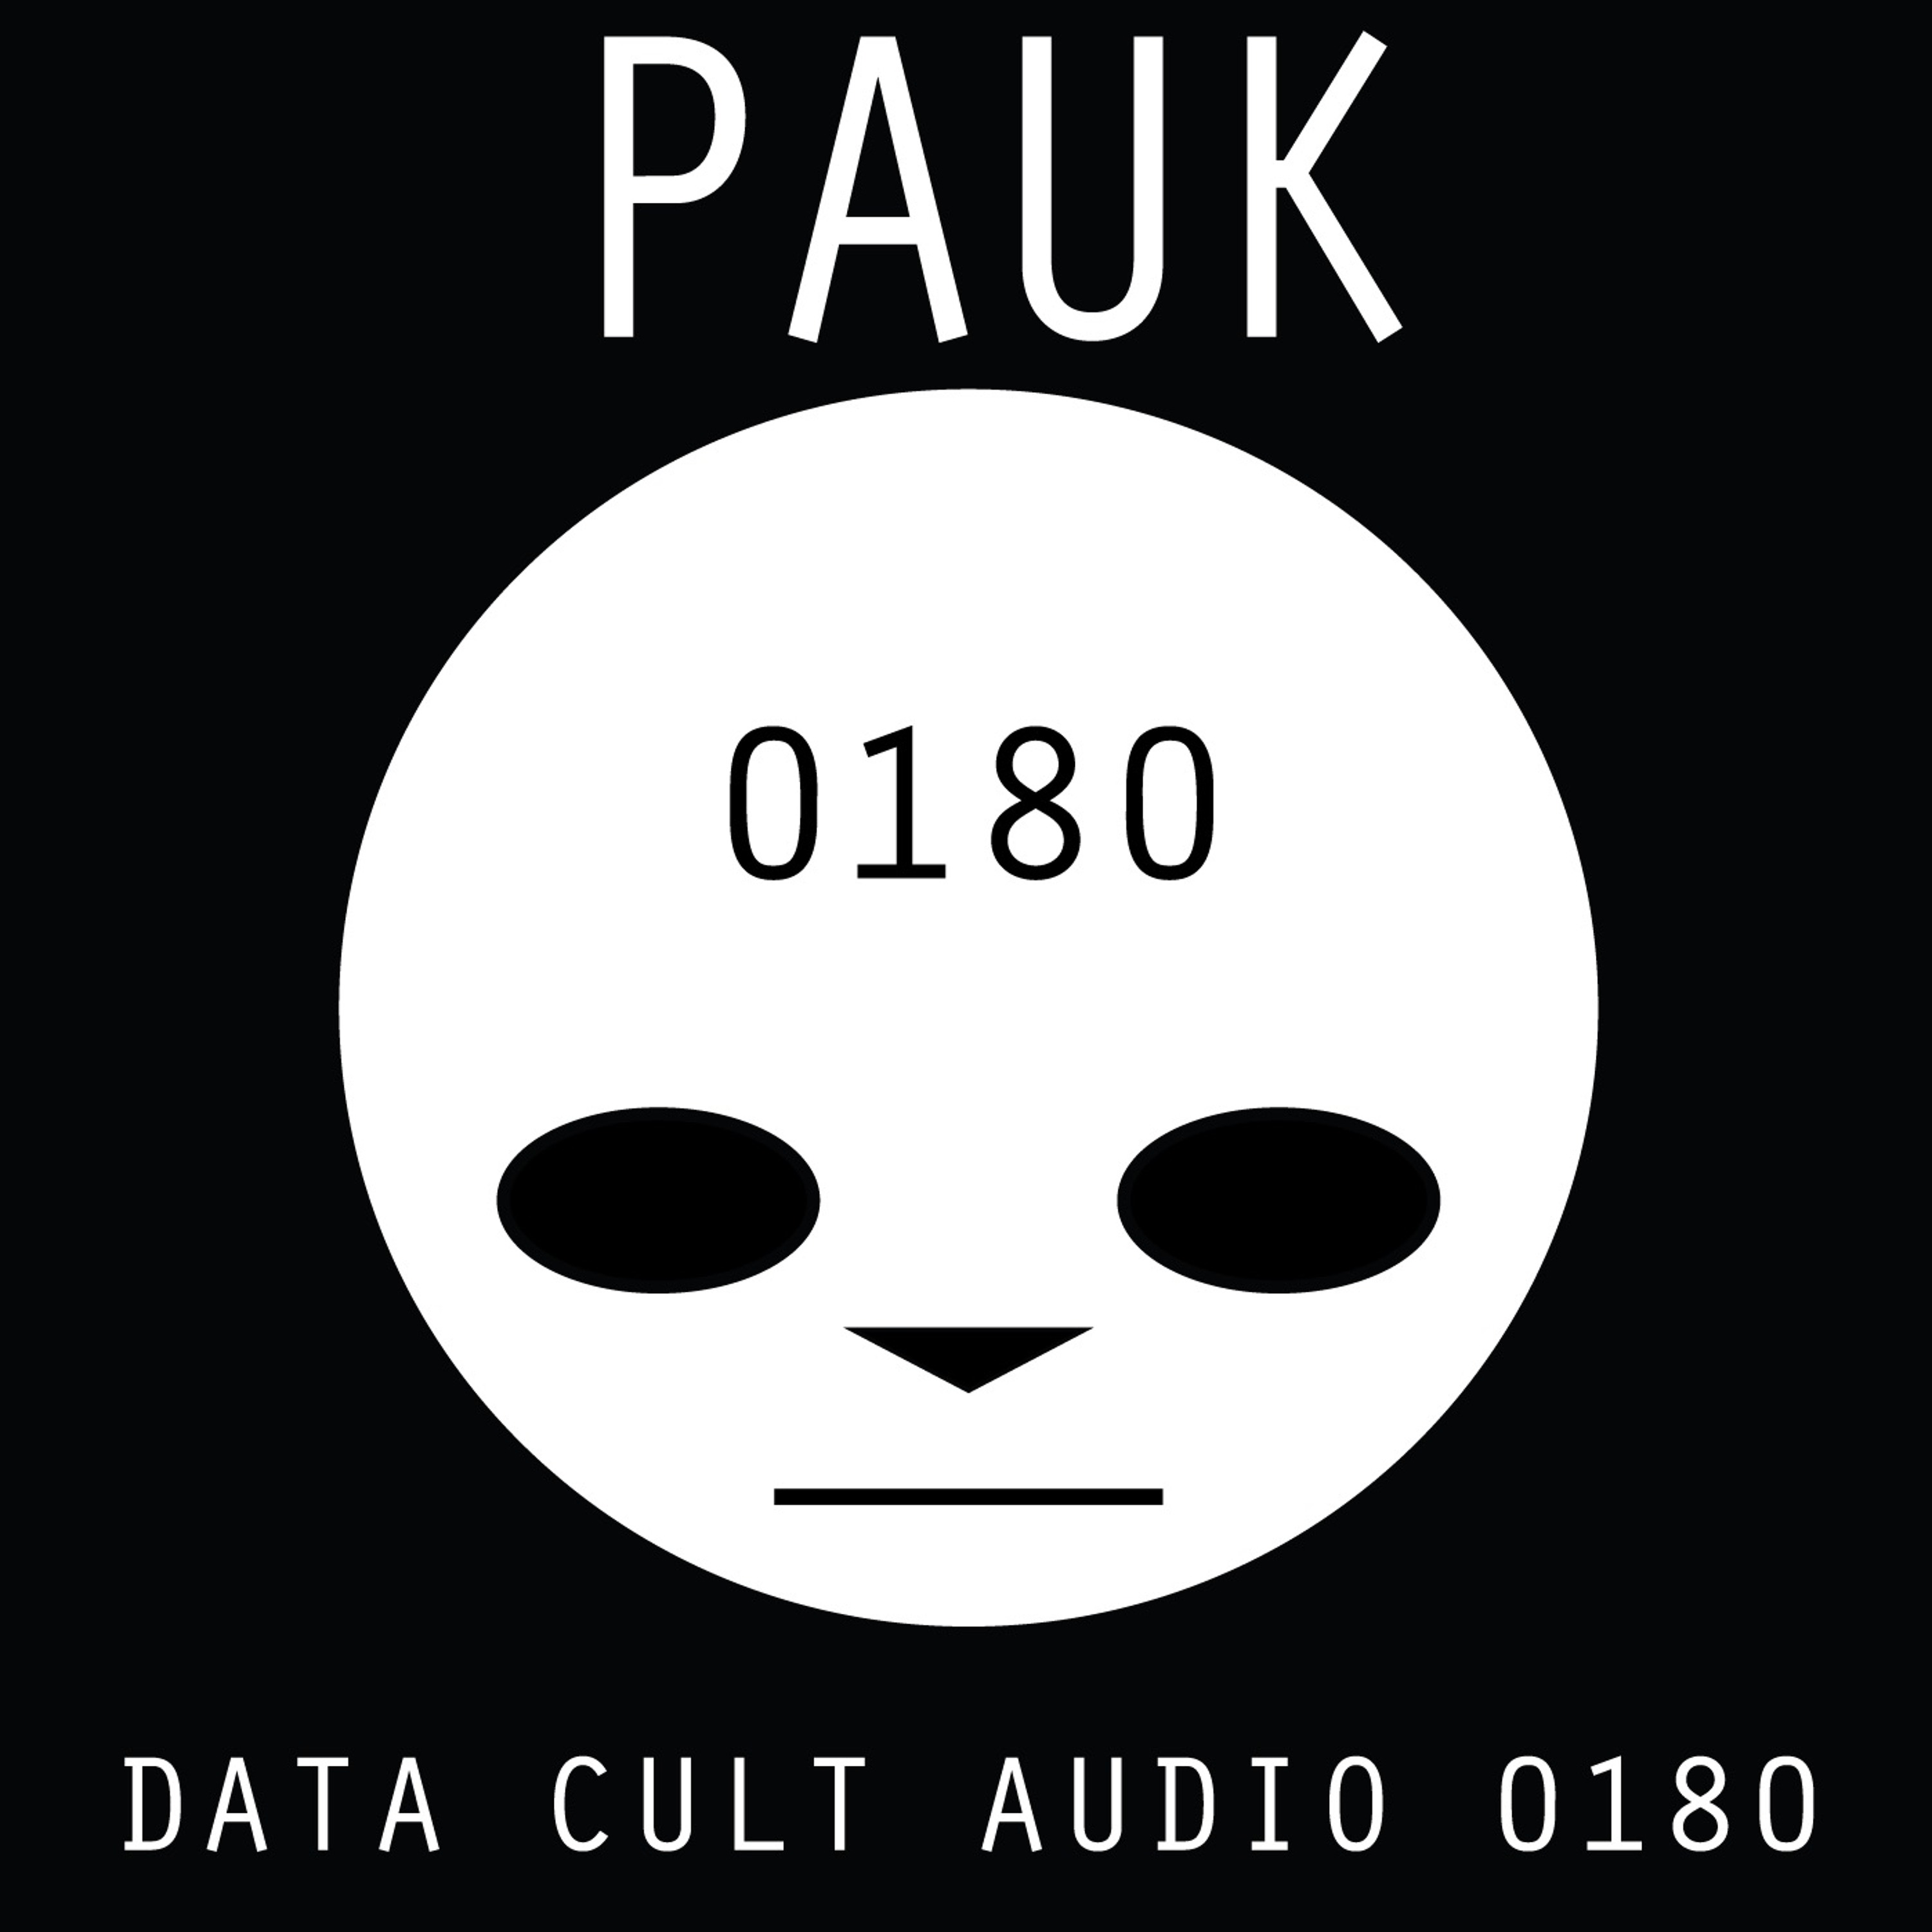 Data Cult Audio 0180 - Pauk